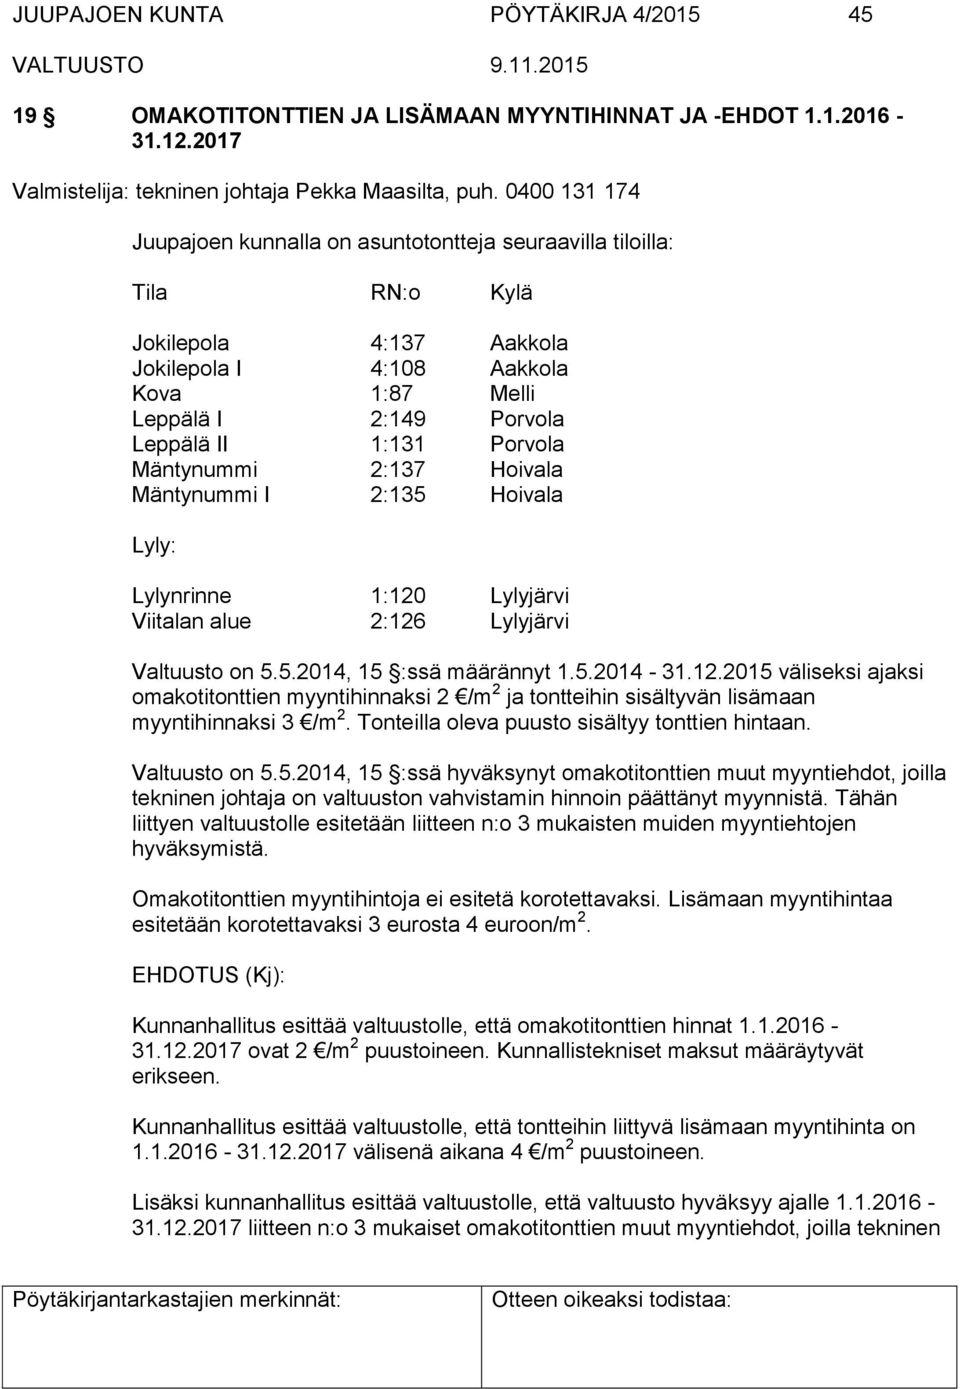 Porvola Mäntynummi 2:137 Hoivala Mäntynummi I 2:135 Hoivala Lyly: Lylynrinne 1:120 Lylyjärvi Viitalan alue 2:126 Lylyjärvi Valtuusto on 5.5.2014, 15 :ssä määrännyt 1.5.2014-31.12.2015 väliseksi ajaksi omakotitonttien myyntihinnaksi 2 /m 2 ja tontteihin sisältyvän lisämaan myyntihinnaksi 3 /m 2.